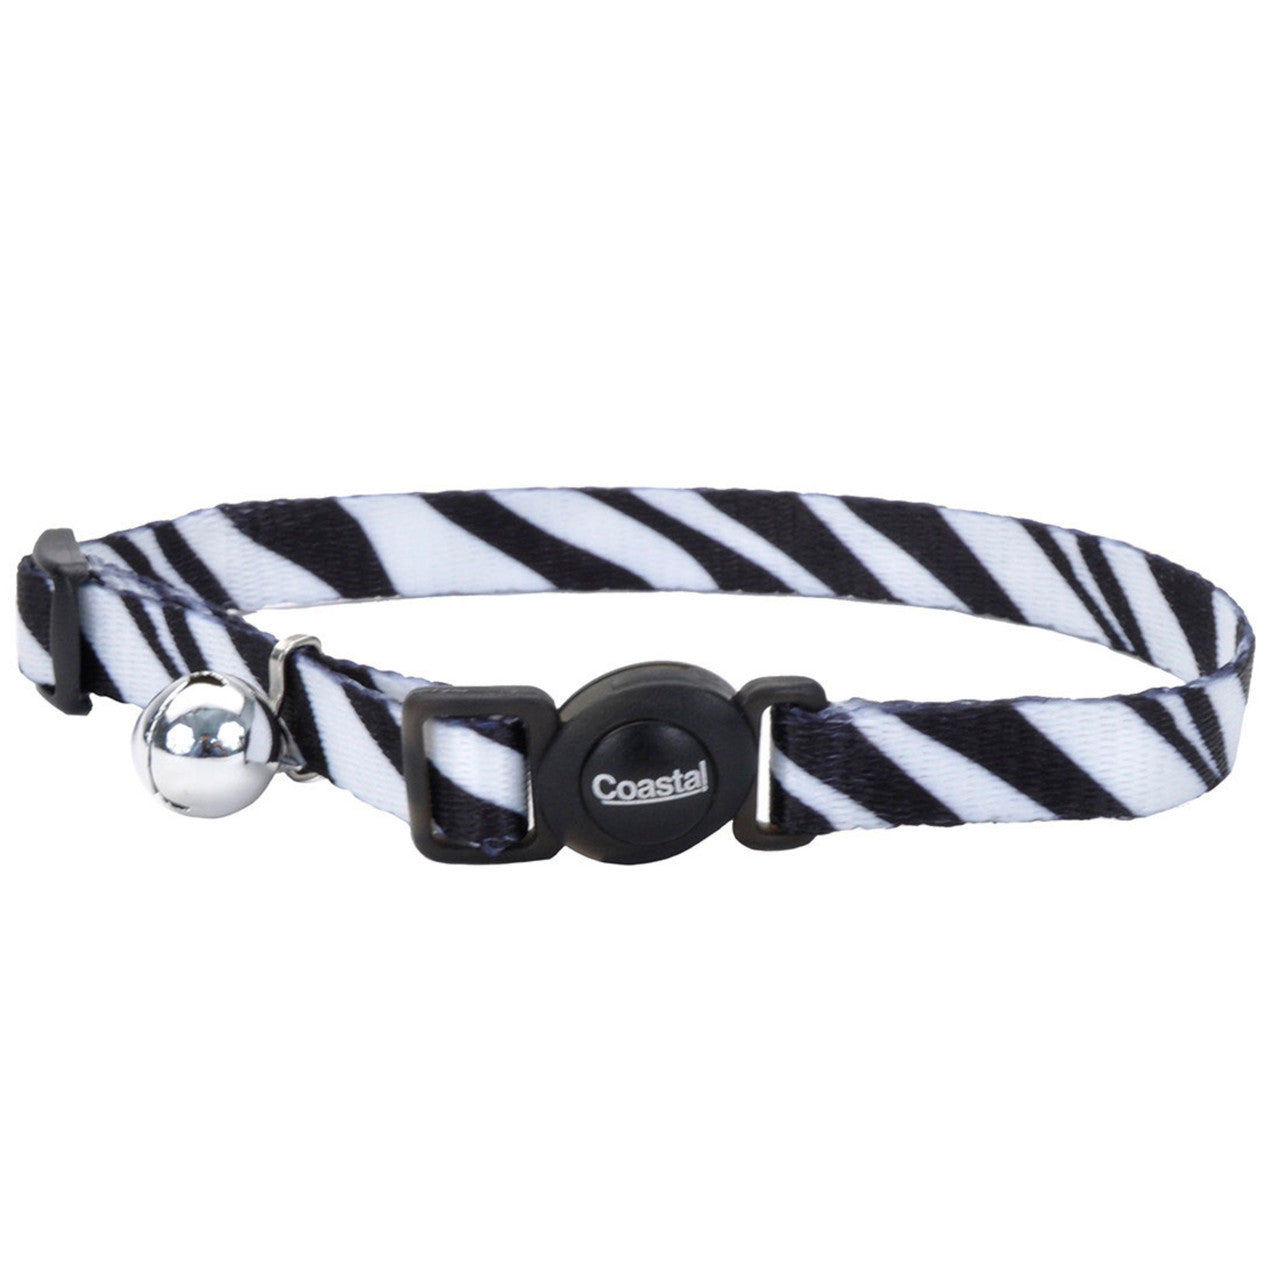 Safe Cat Fashion Adjustable Breakaway Cat Collar Zebra Black, White 3/8 in x 8-12 in